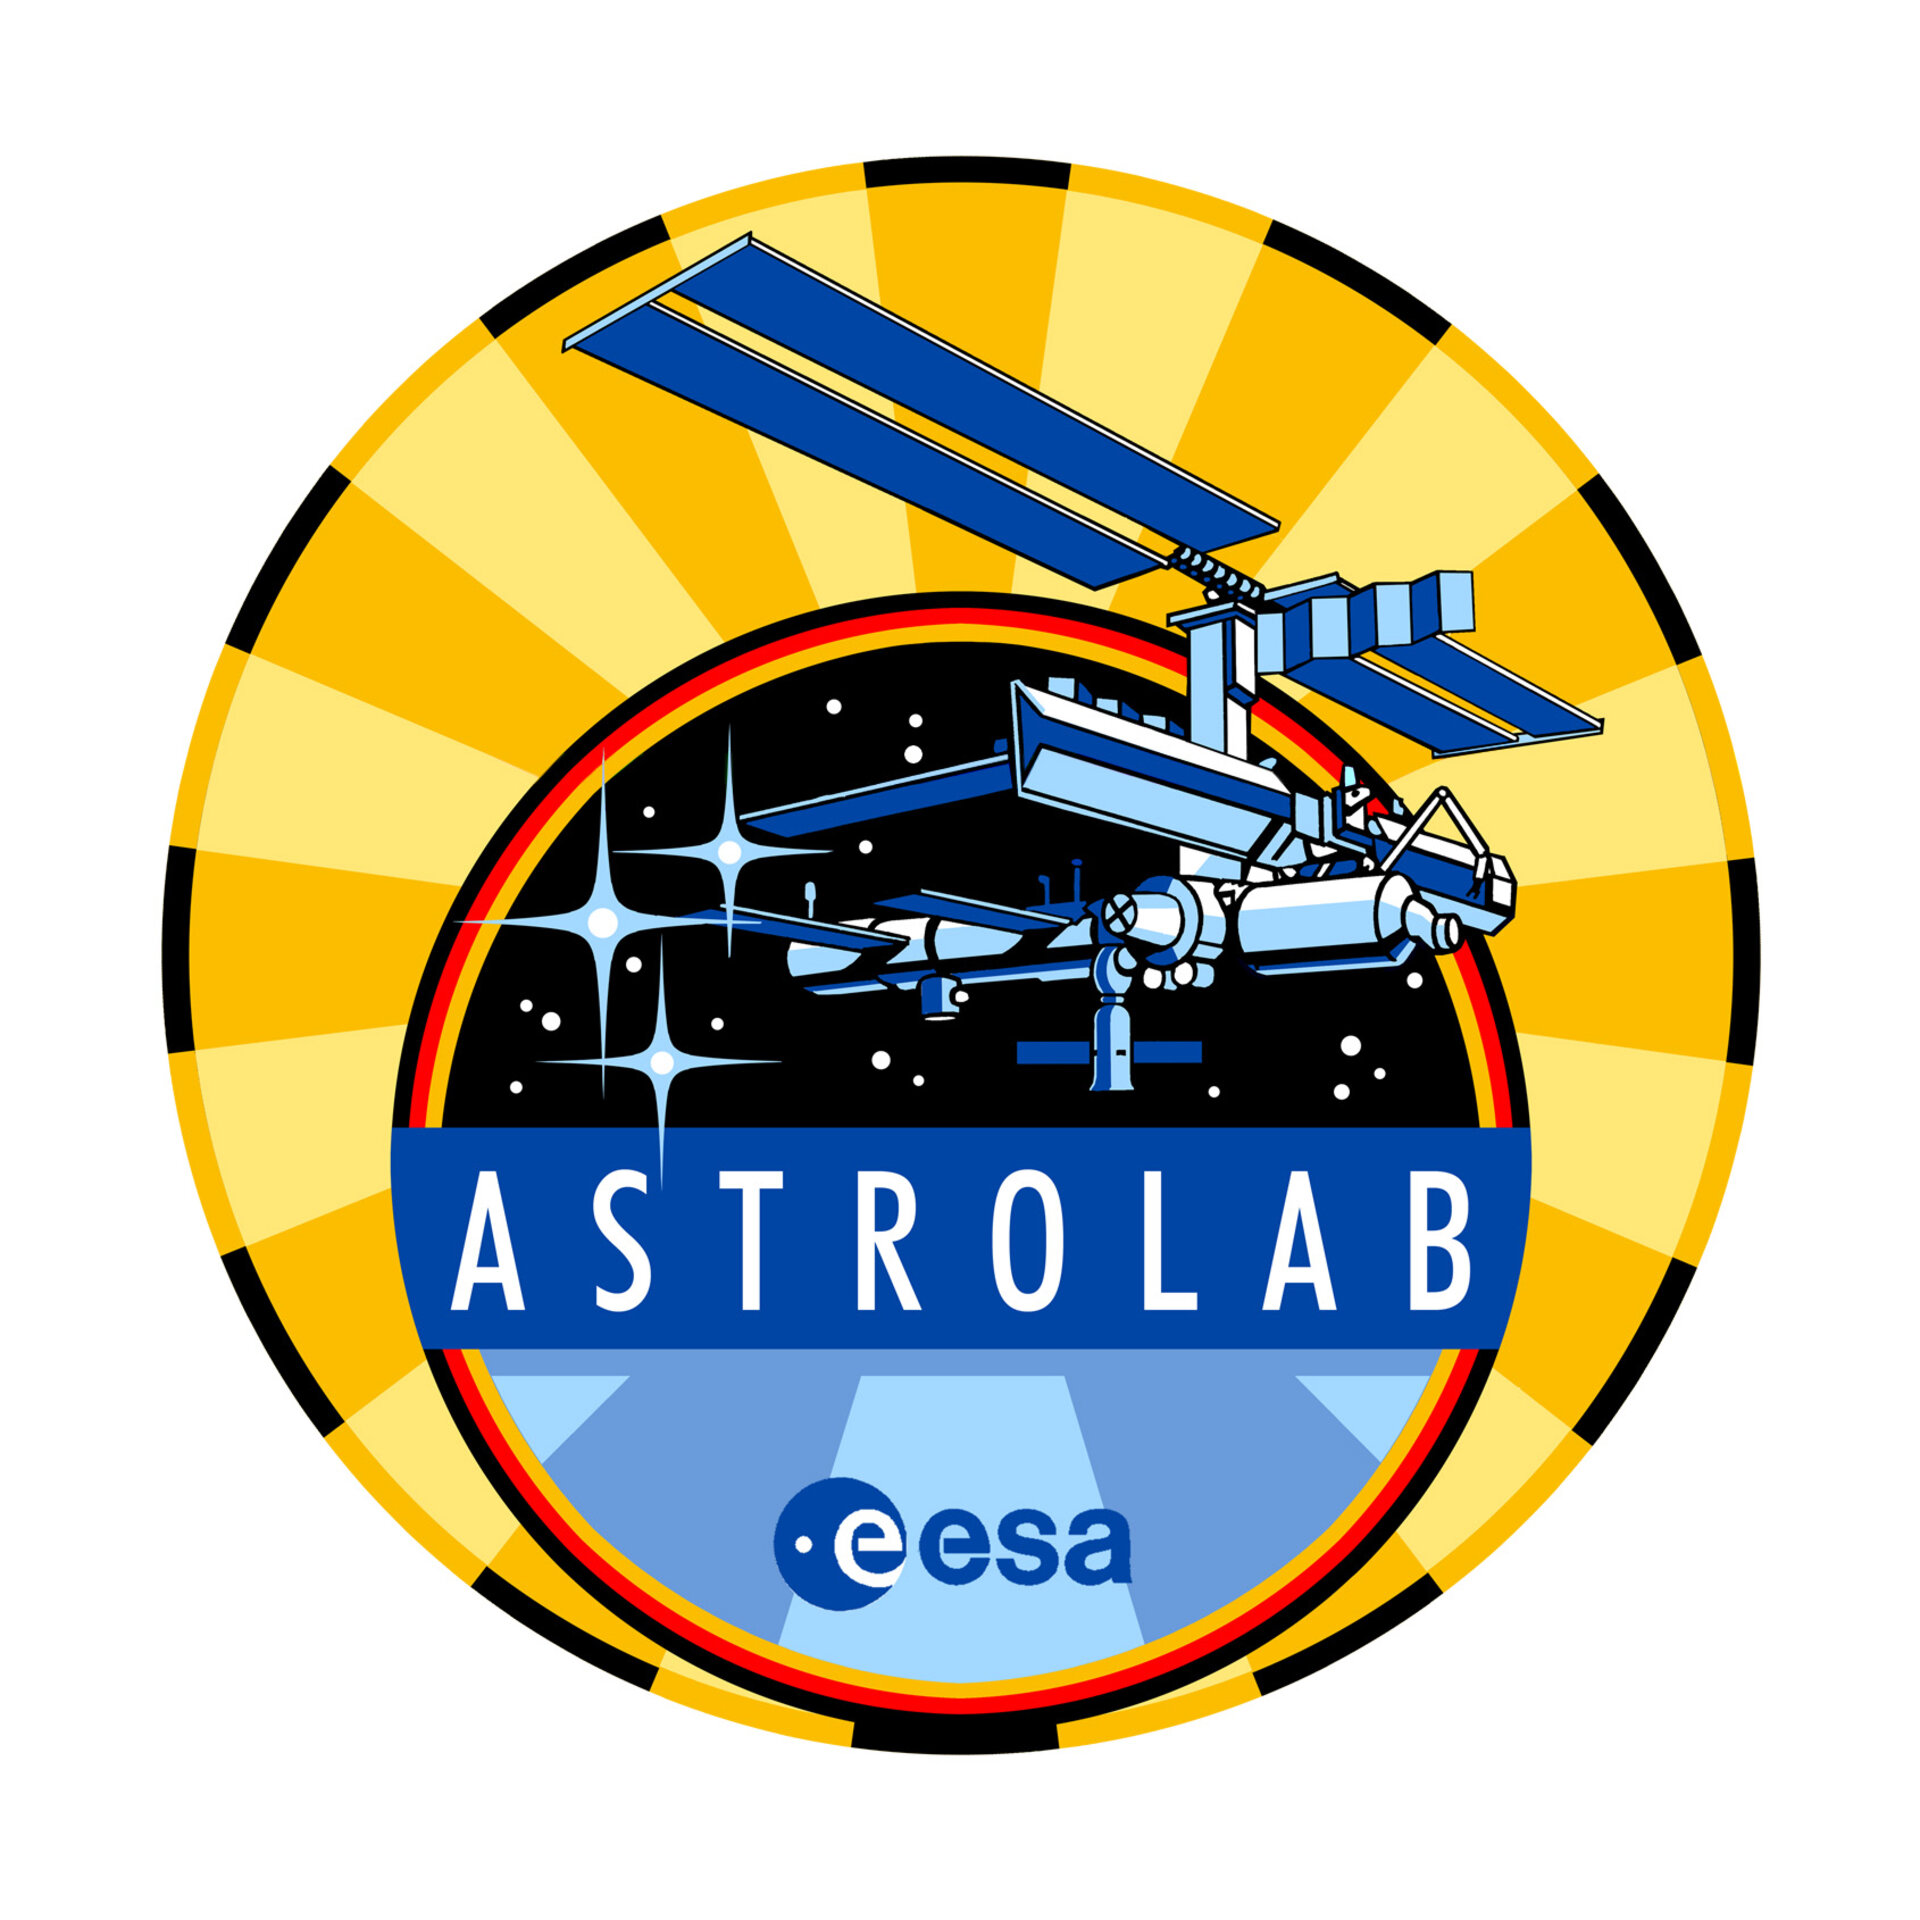 Astrolab mission logo